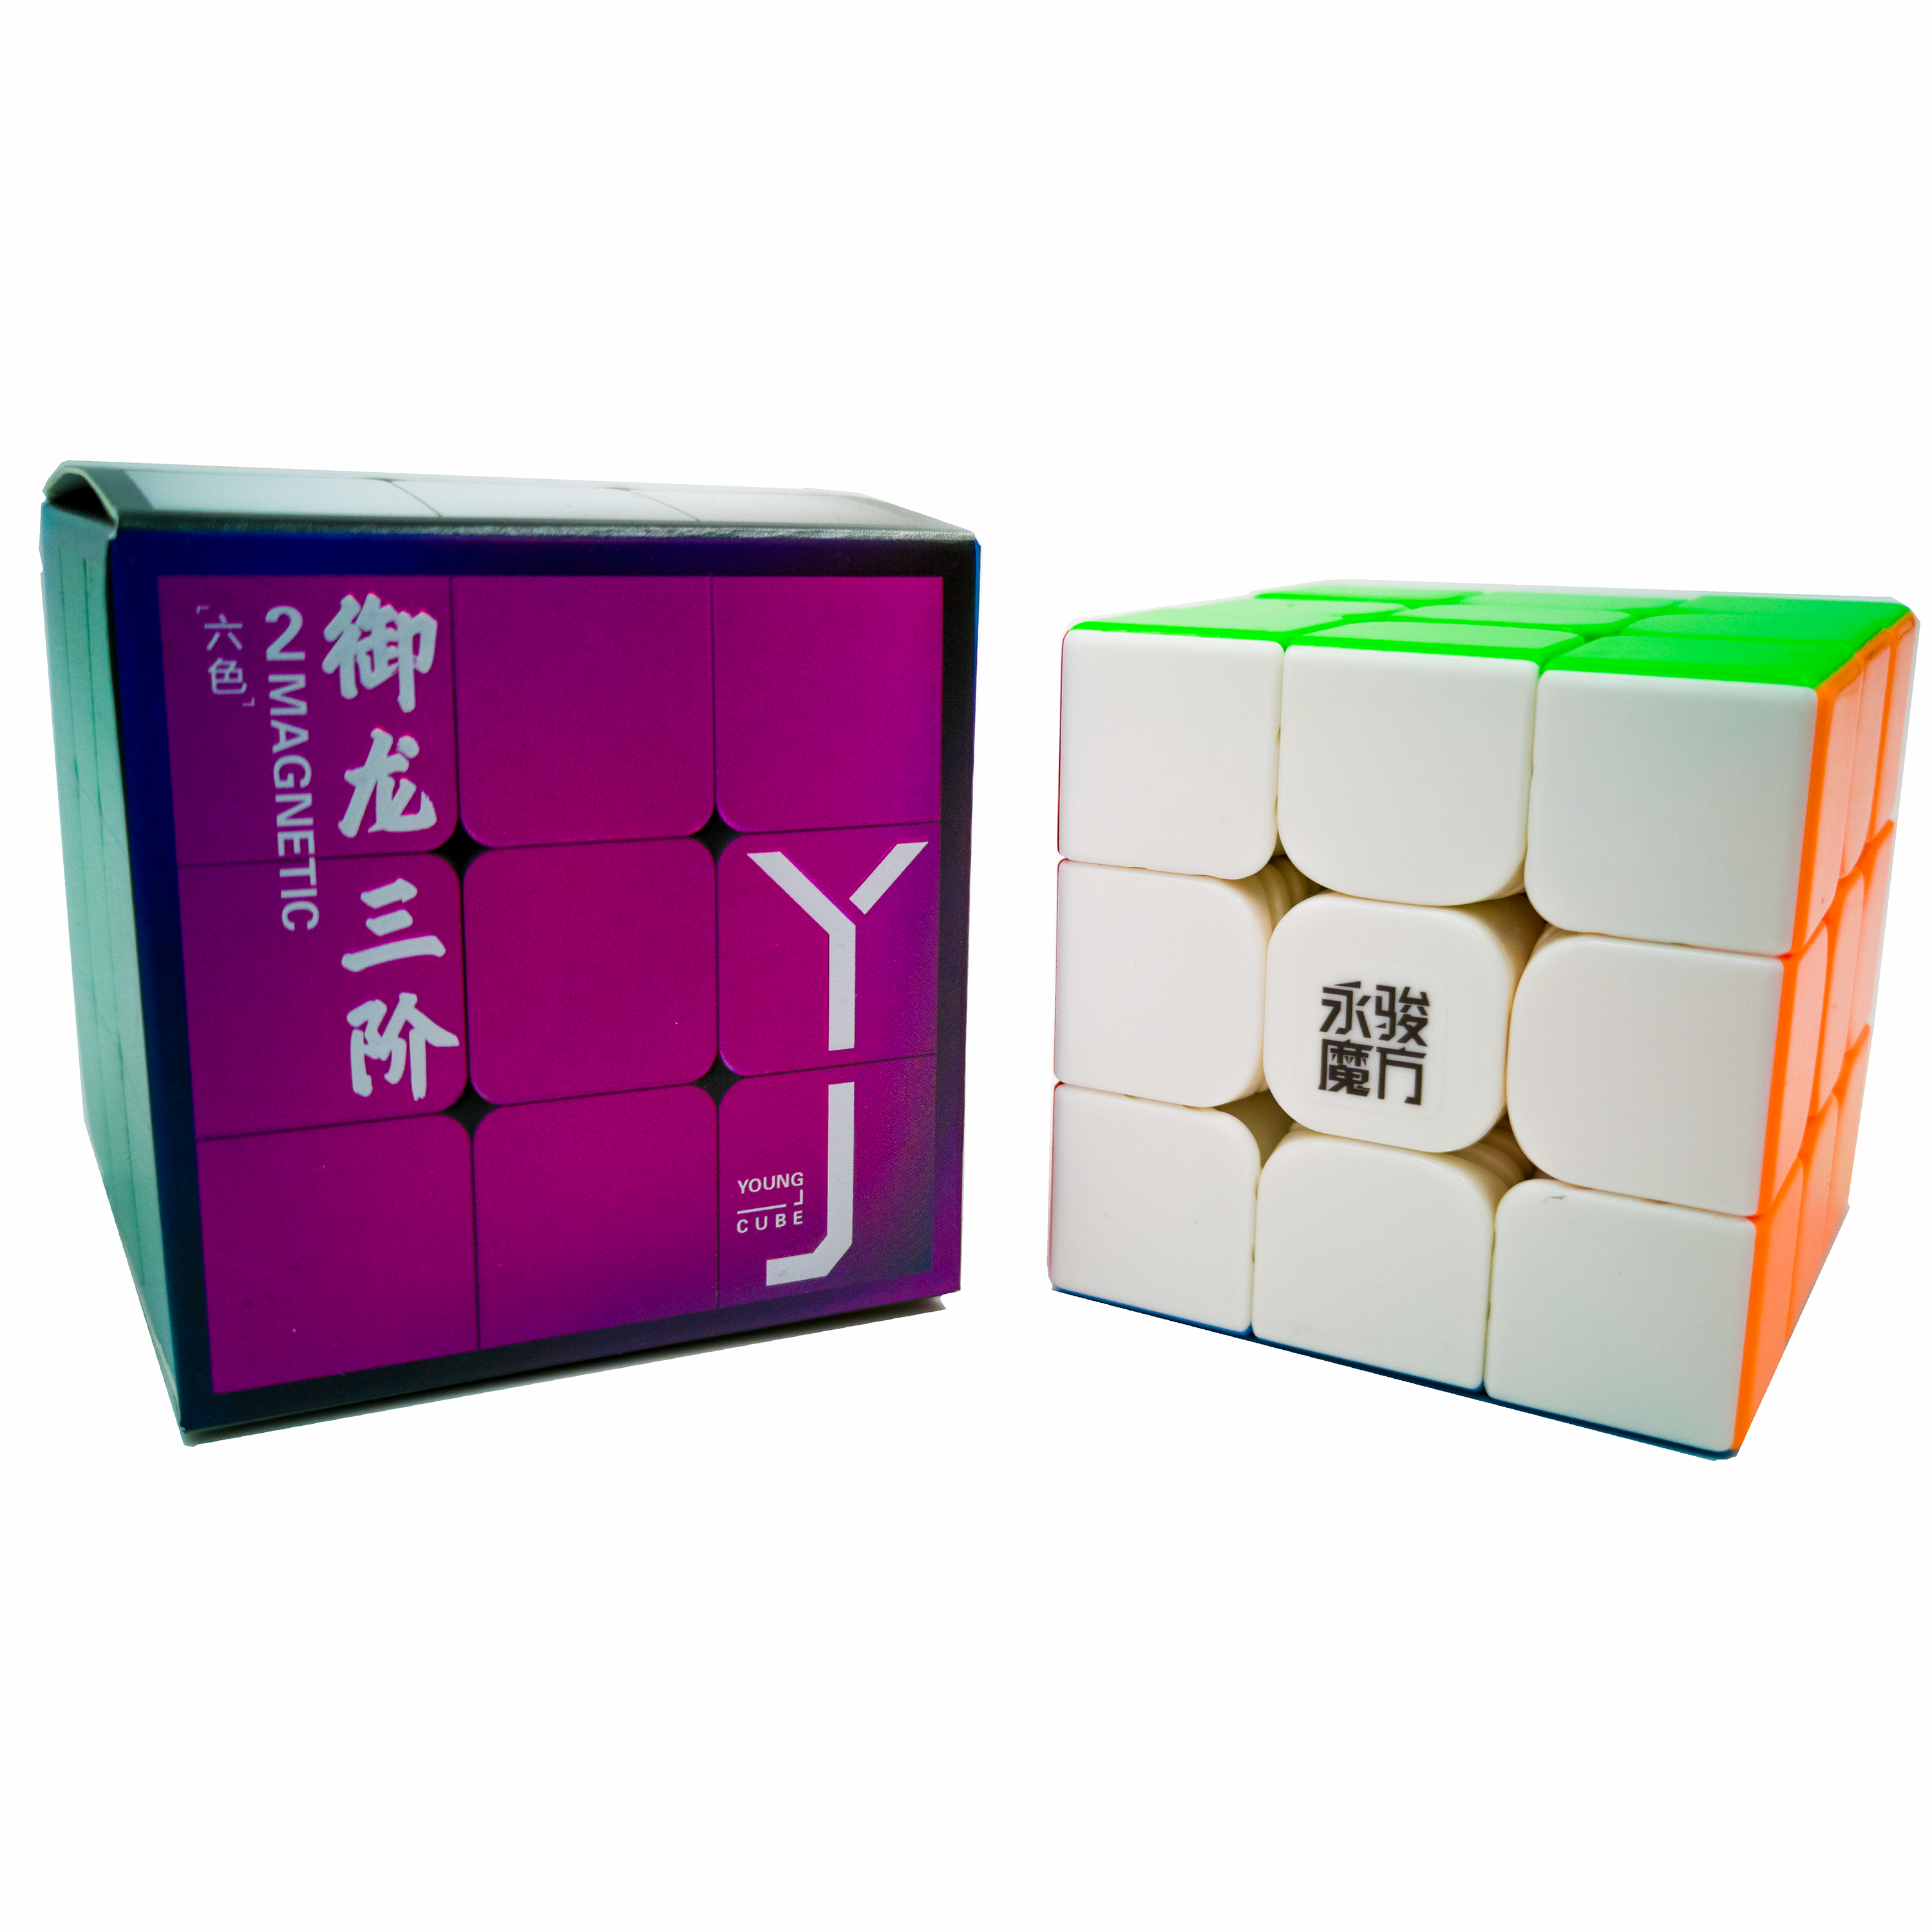 YJ YuLong V2 M 3x3 - CuberSpace